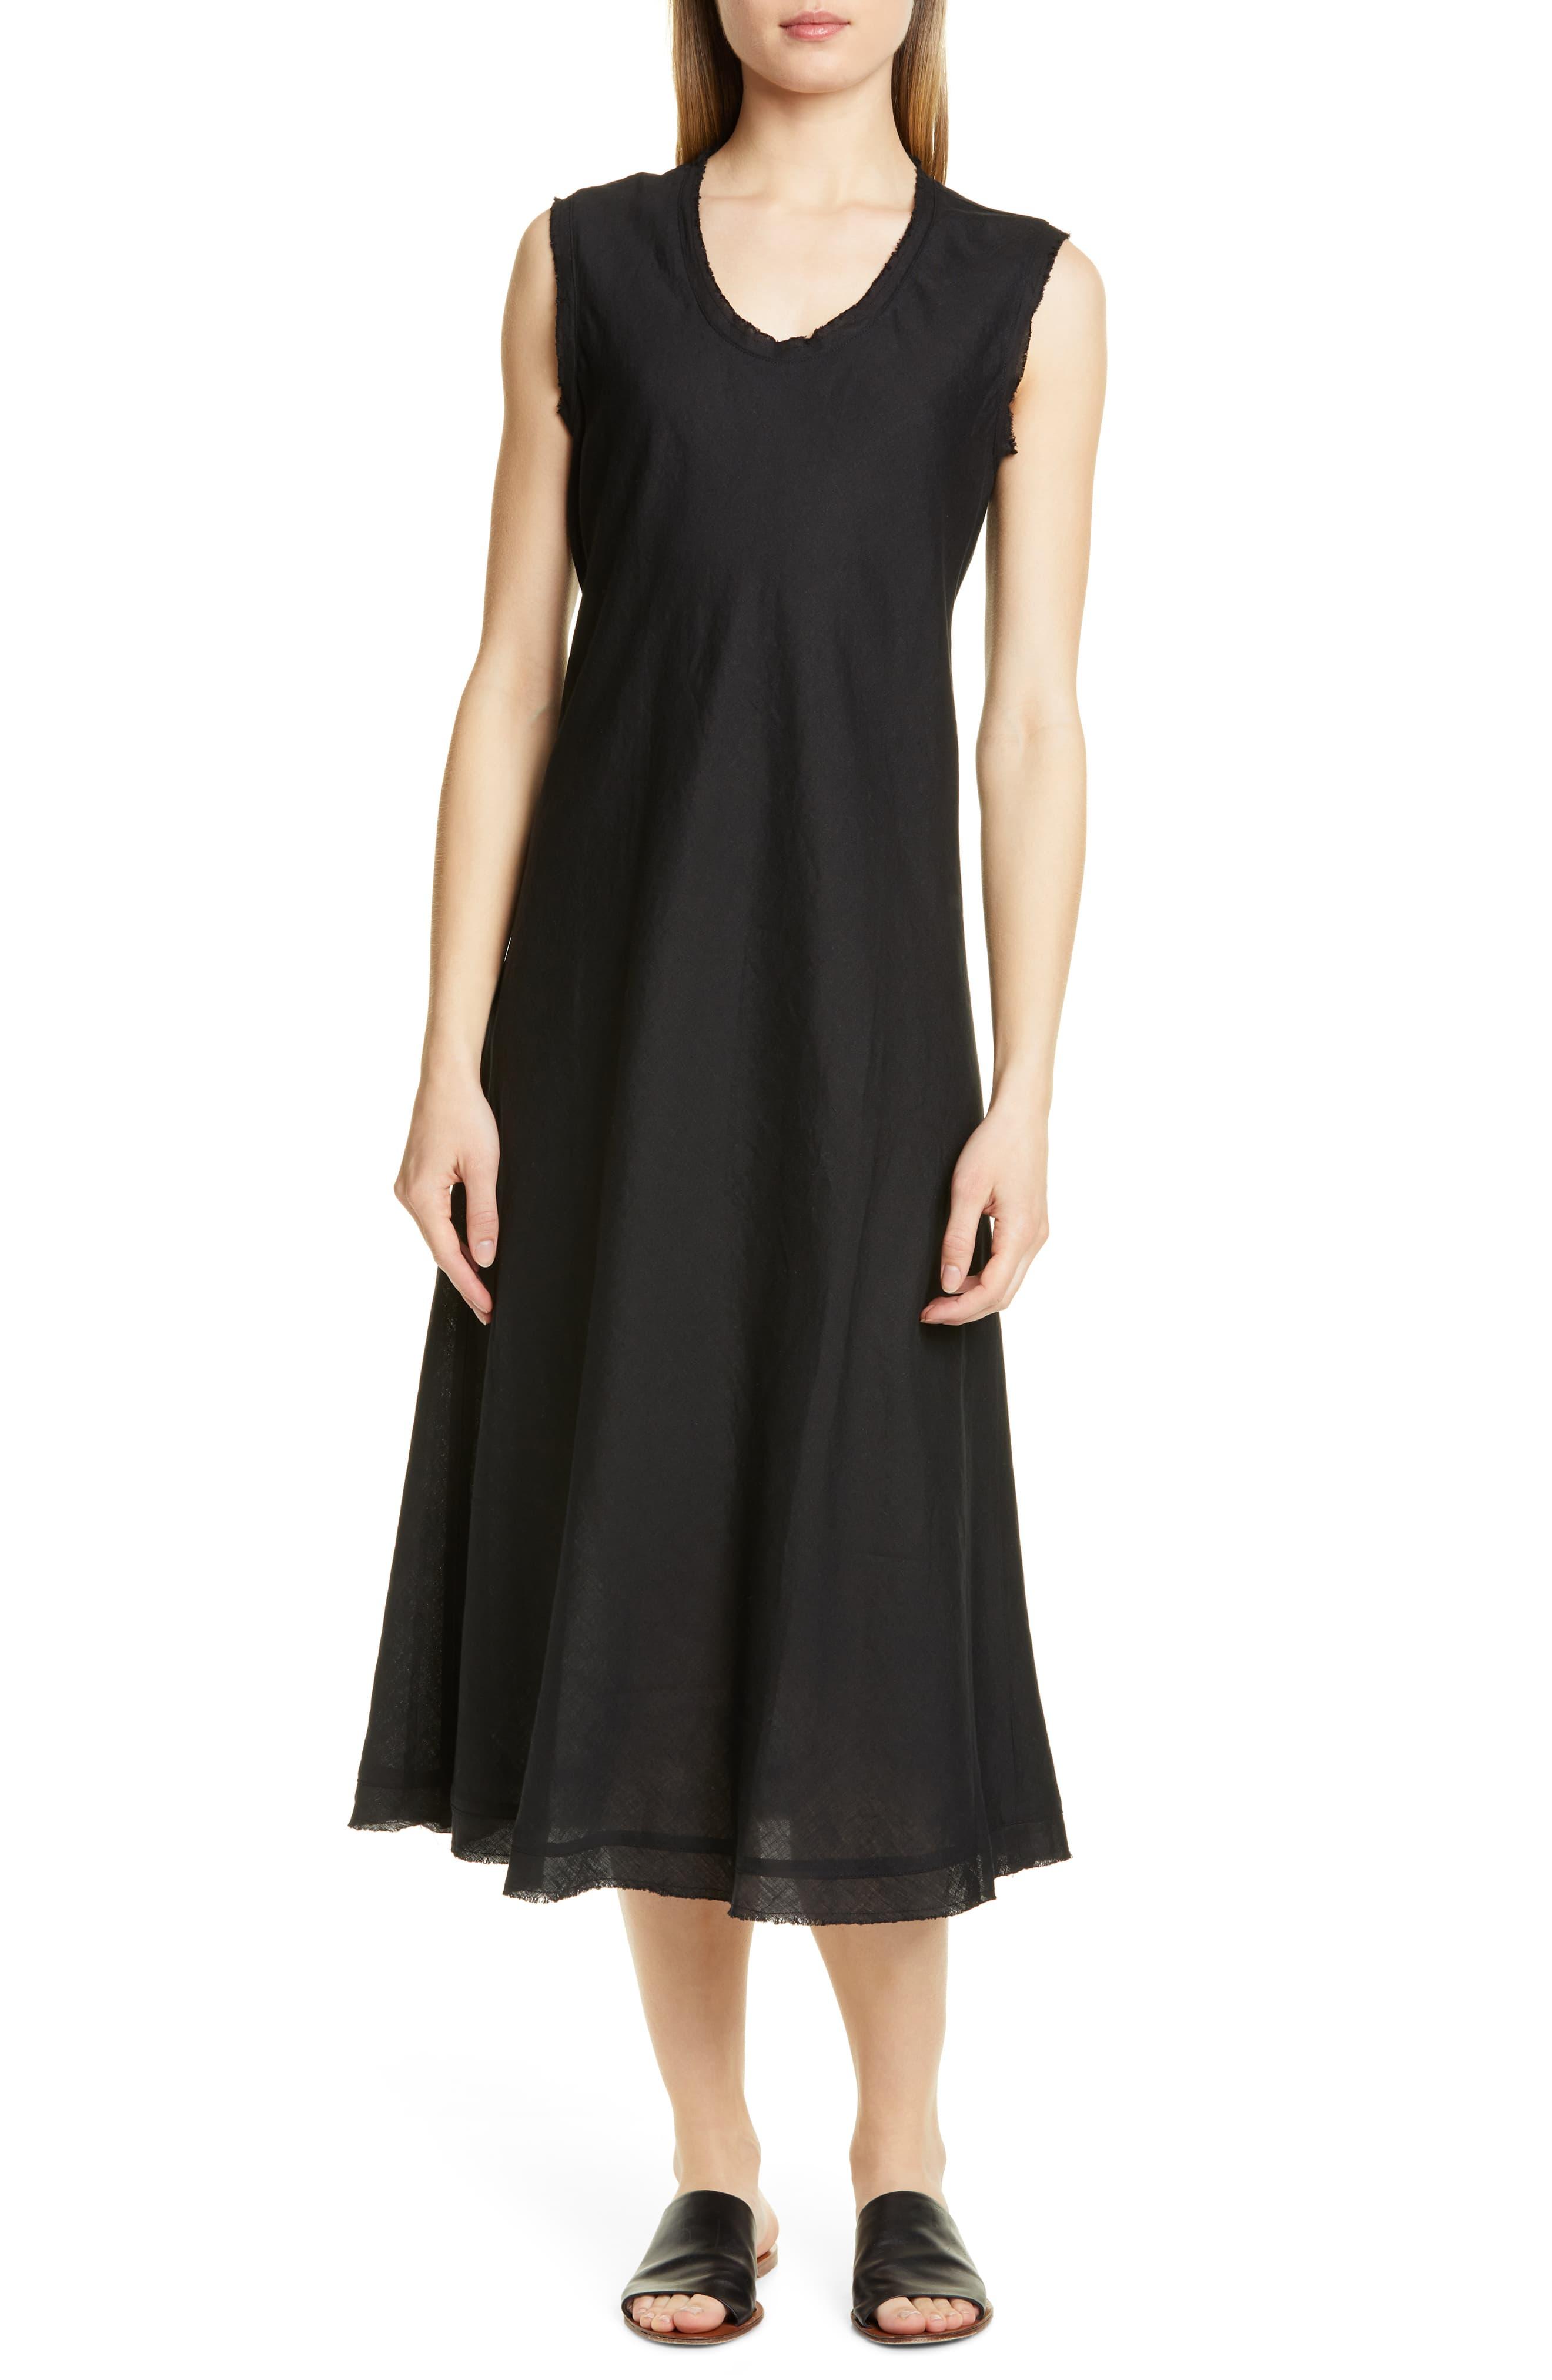 Eileen Fisher Shaped Sleeveless Linen Tank Dress in Black - Lyst